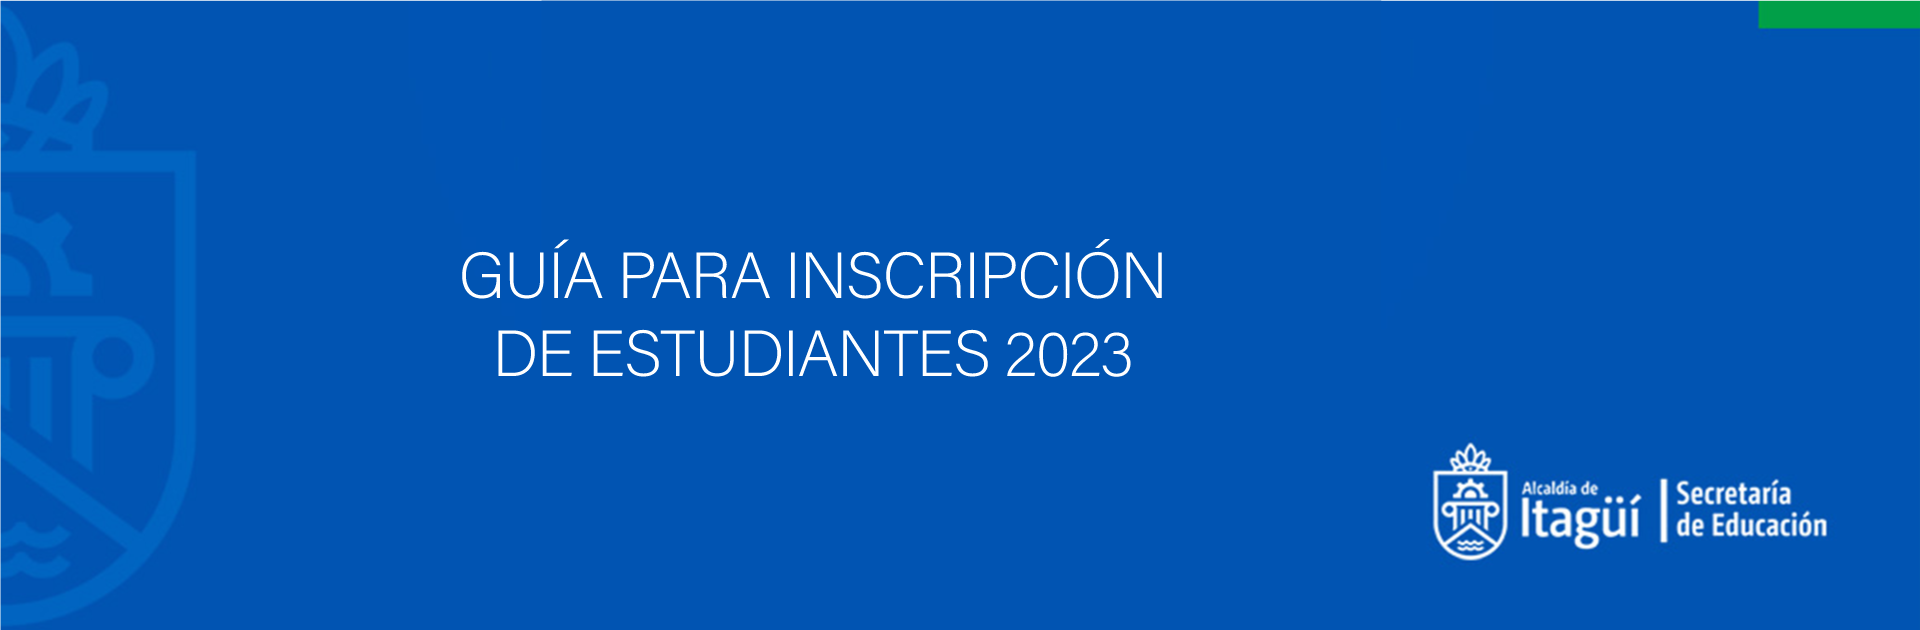 GUÍA PARA INSCRIPCIÓN DE ESTUDIANTES 2023